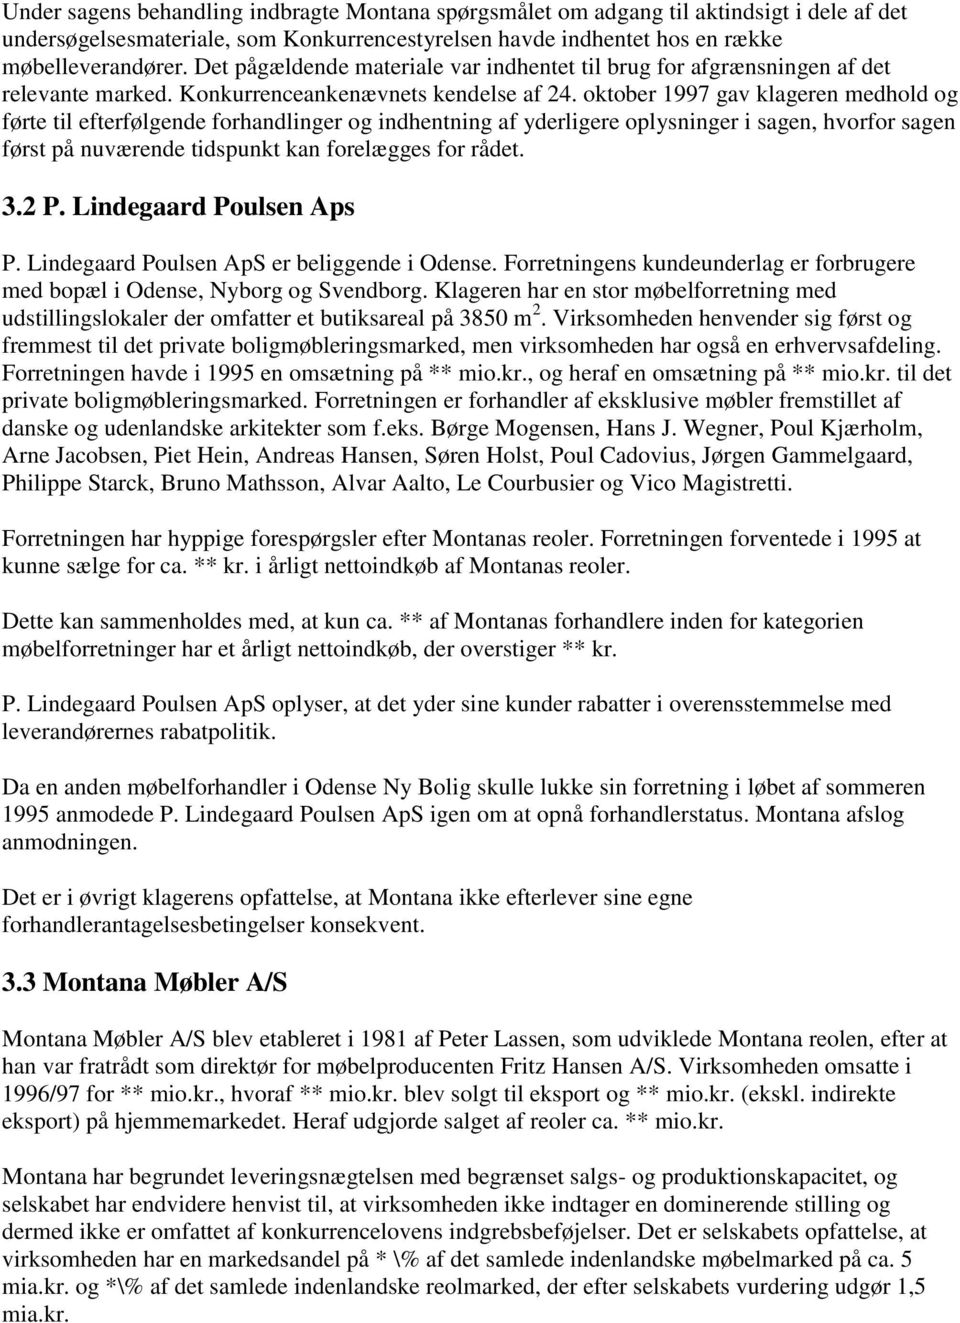 Leveringsnægtelse - Montana Møbler A/S /P. Lindegaard Poulsen ApS ...